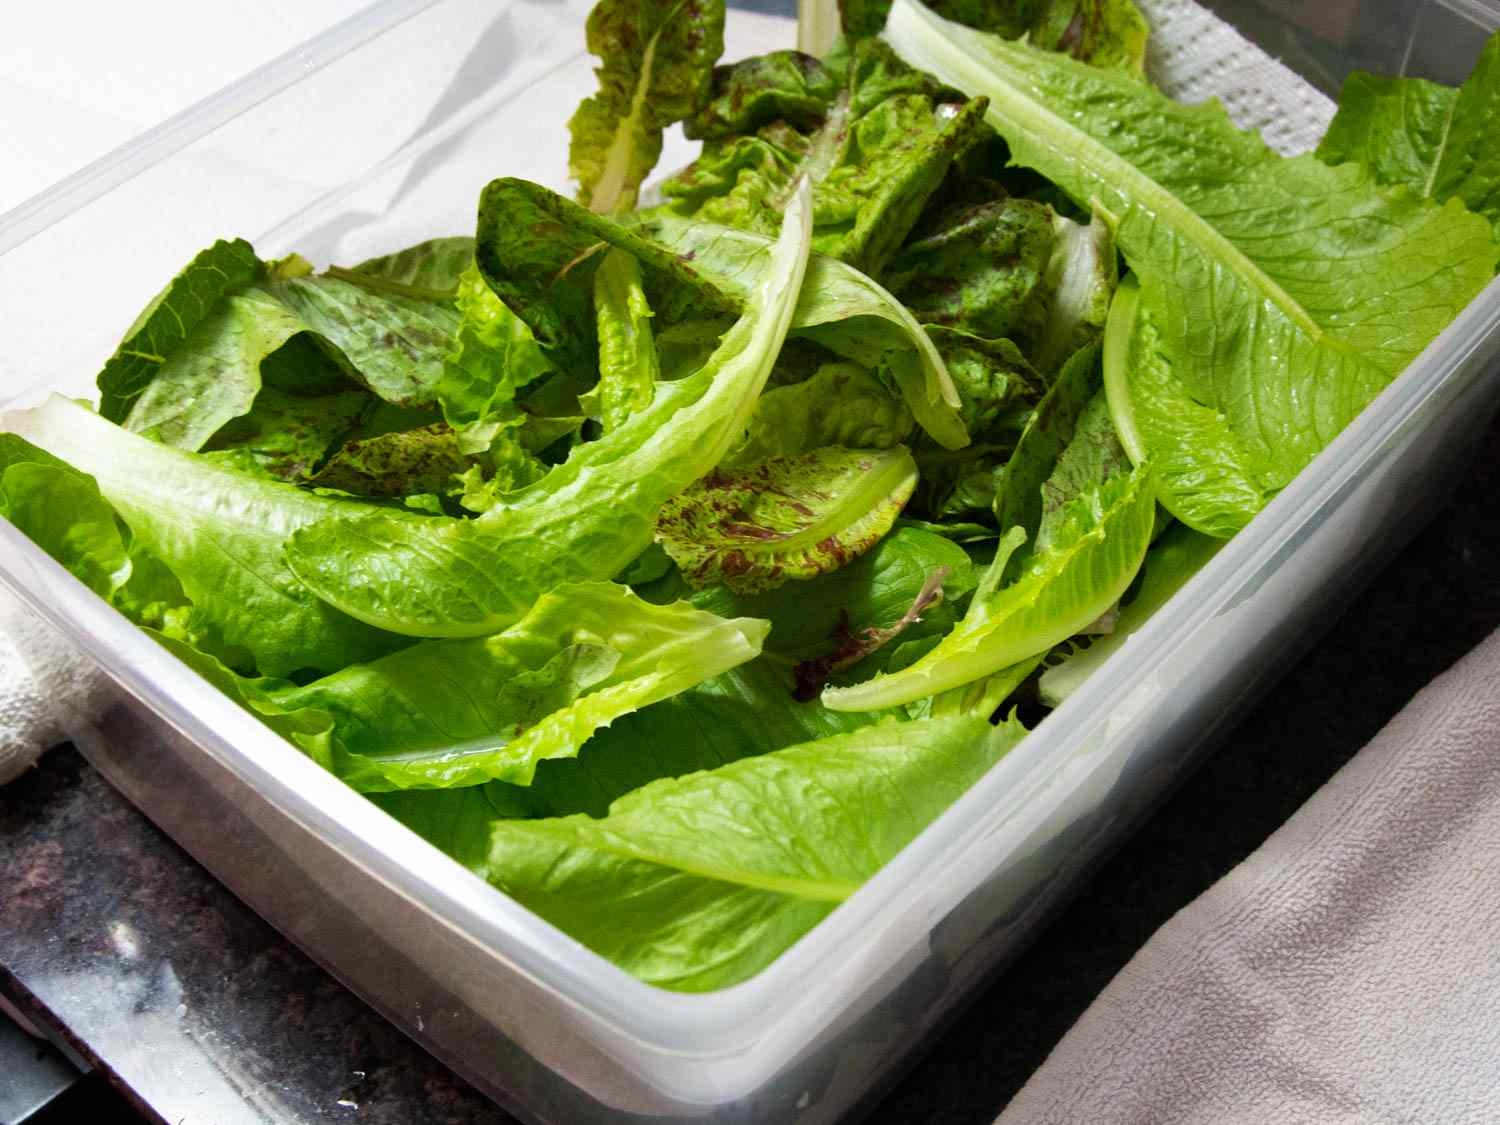 将清洁的生菜叶分层放入塑料盒中储存